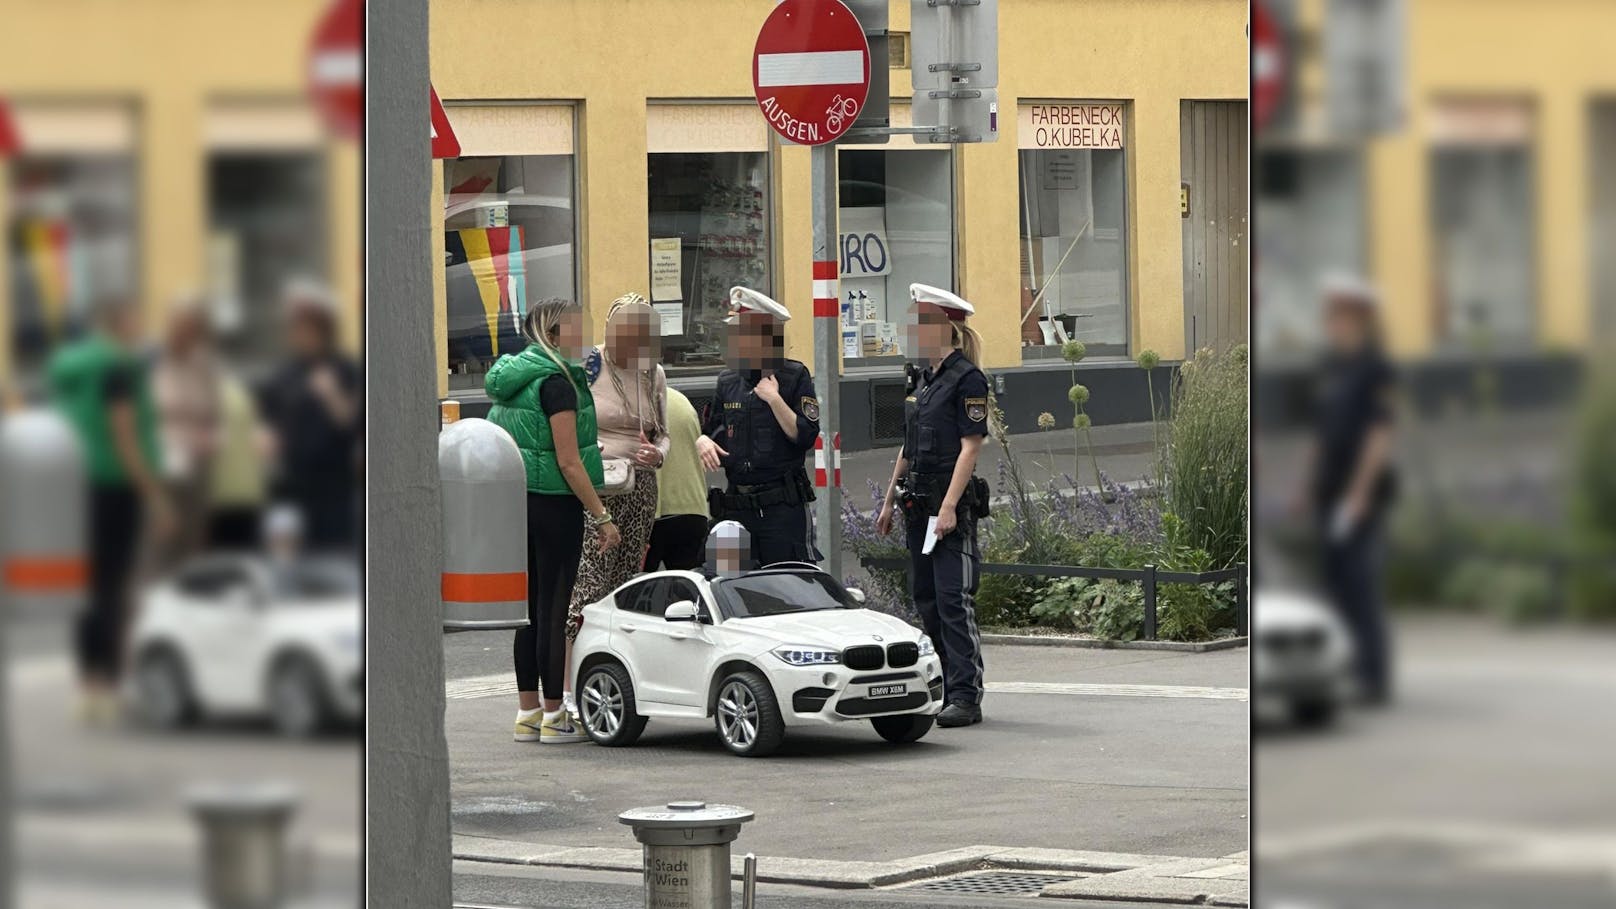 06.06.2023: Ausgebremst! Polizei kontrolliert in Wien Mini-BMW – <a target="_blank" data-li-document-ref="100274891" href="https://www.heute.at/g/ausgebremst-polizei-kontrolliert-in-wien-mini-bmw-100274891">Weiterlesen &gt;&gt;&gt;</a>